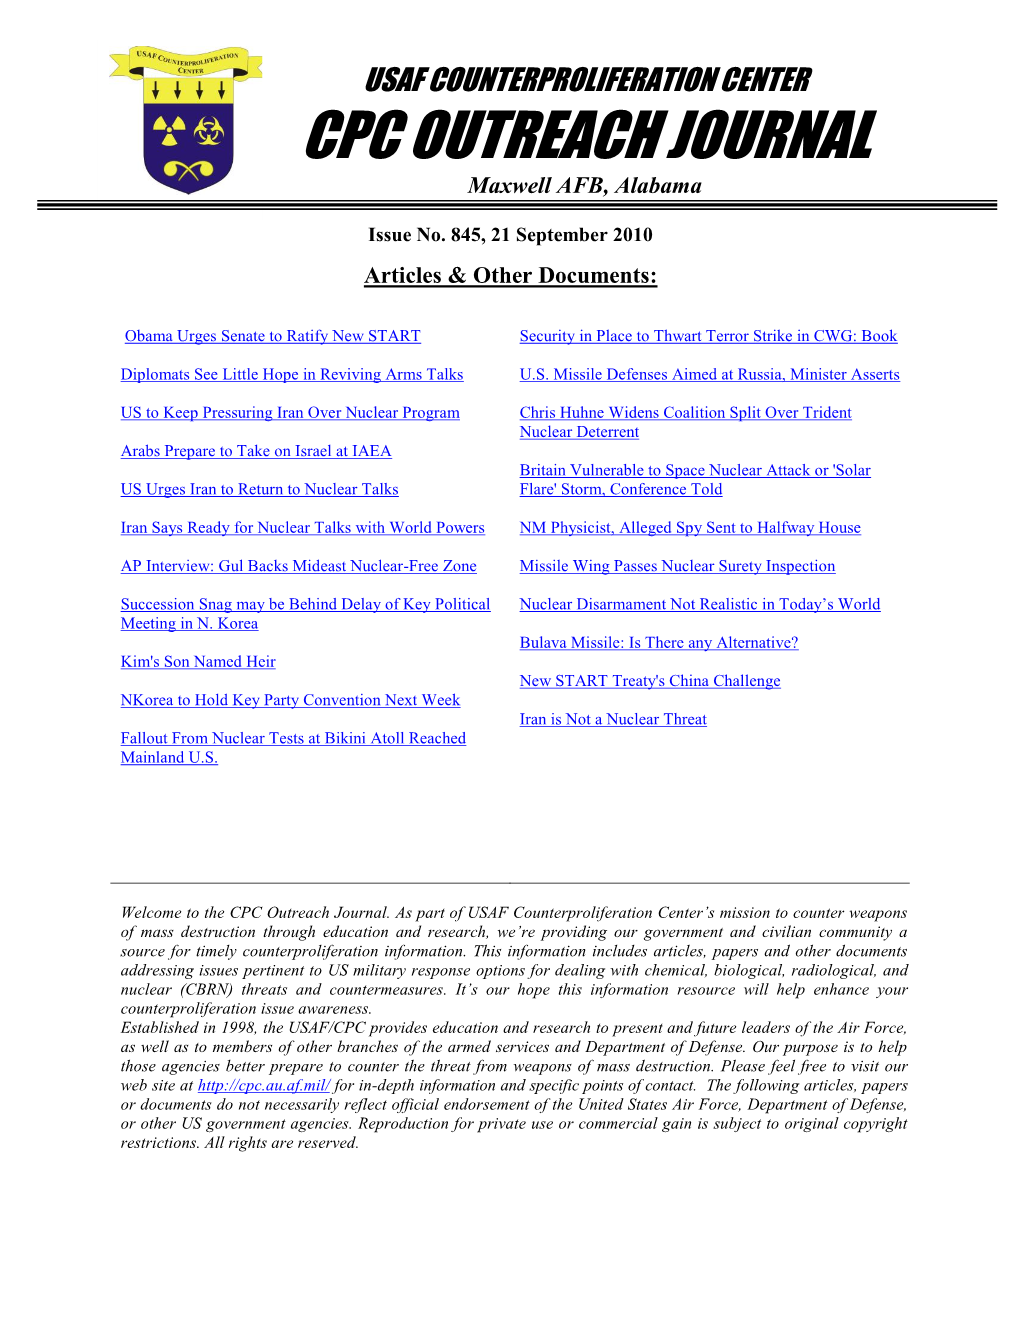 USAF Counterprolifertion Center CPC Outreach Journal #845